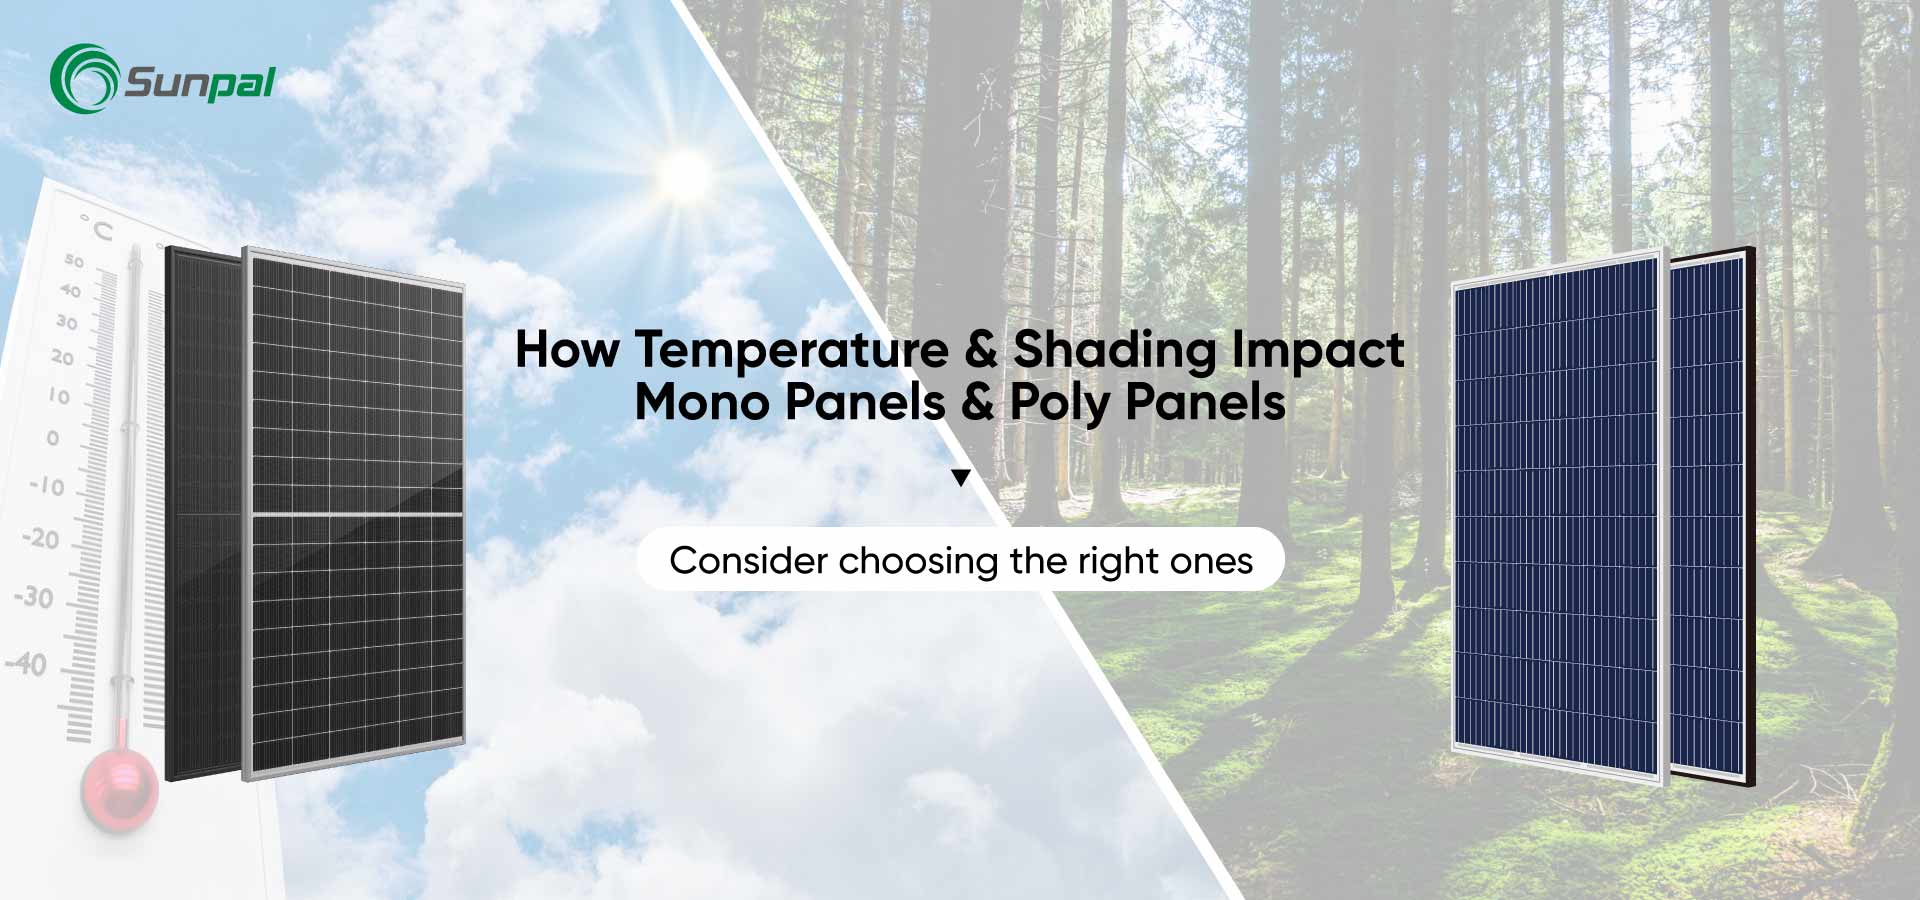 Temperatura e sombreamento: impacto em painéis Mono vs Poly